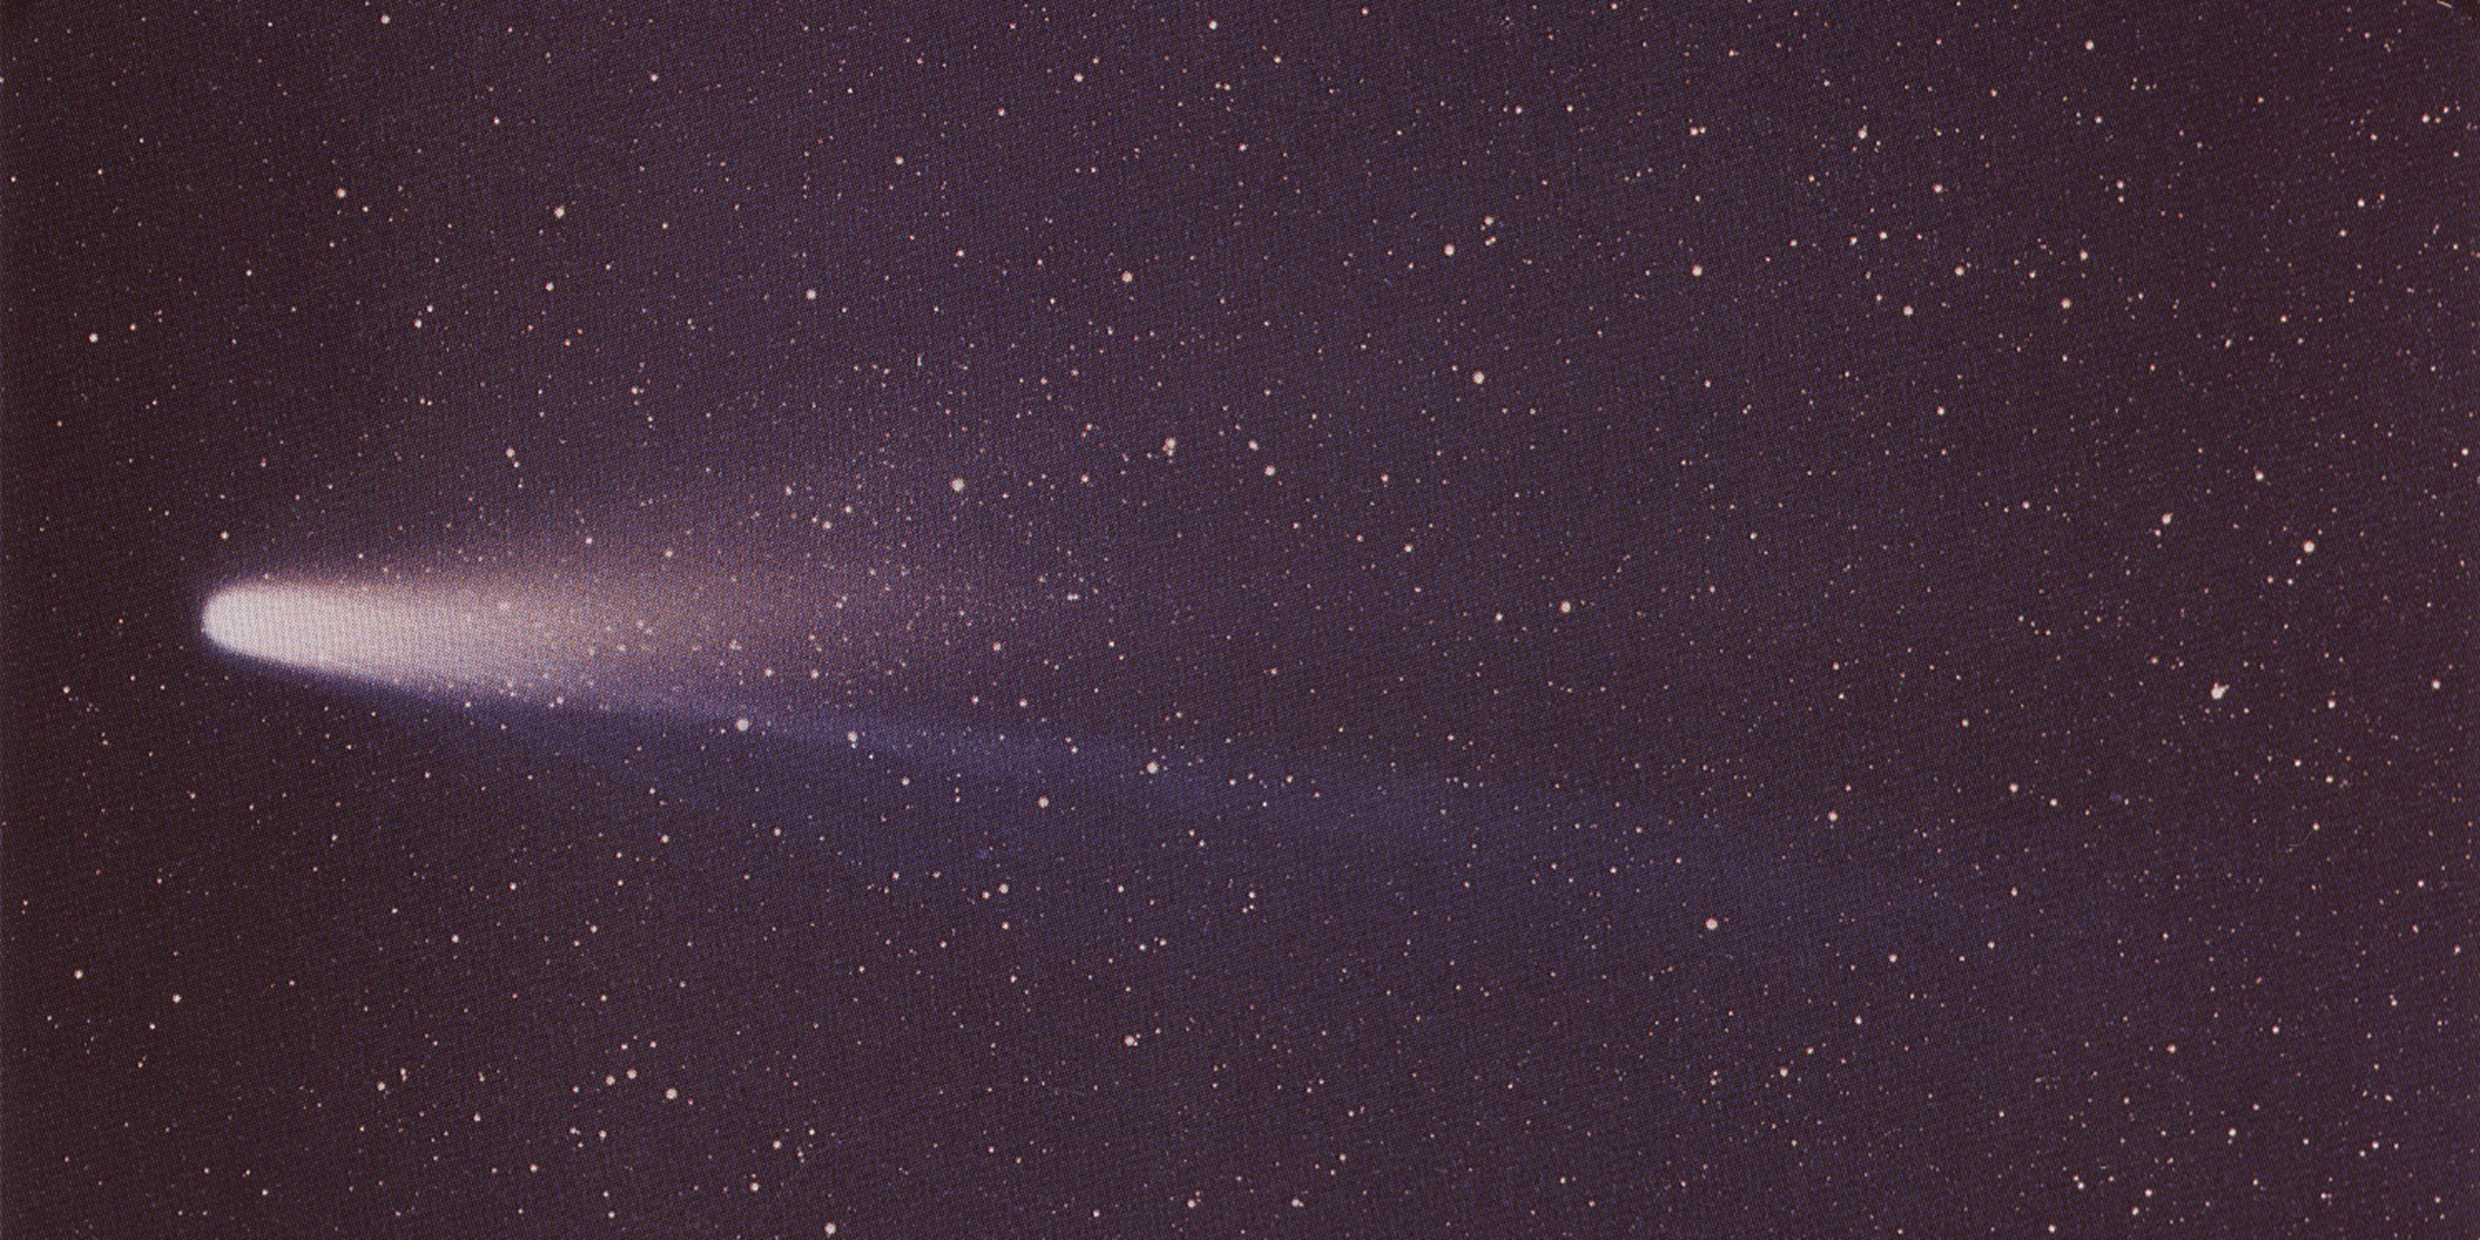 Image of Halley's Comet